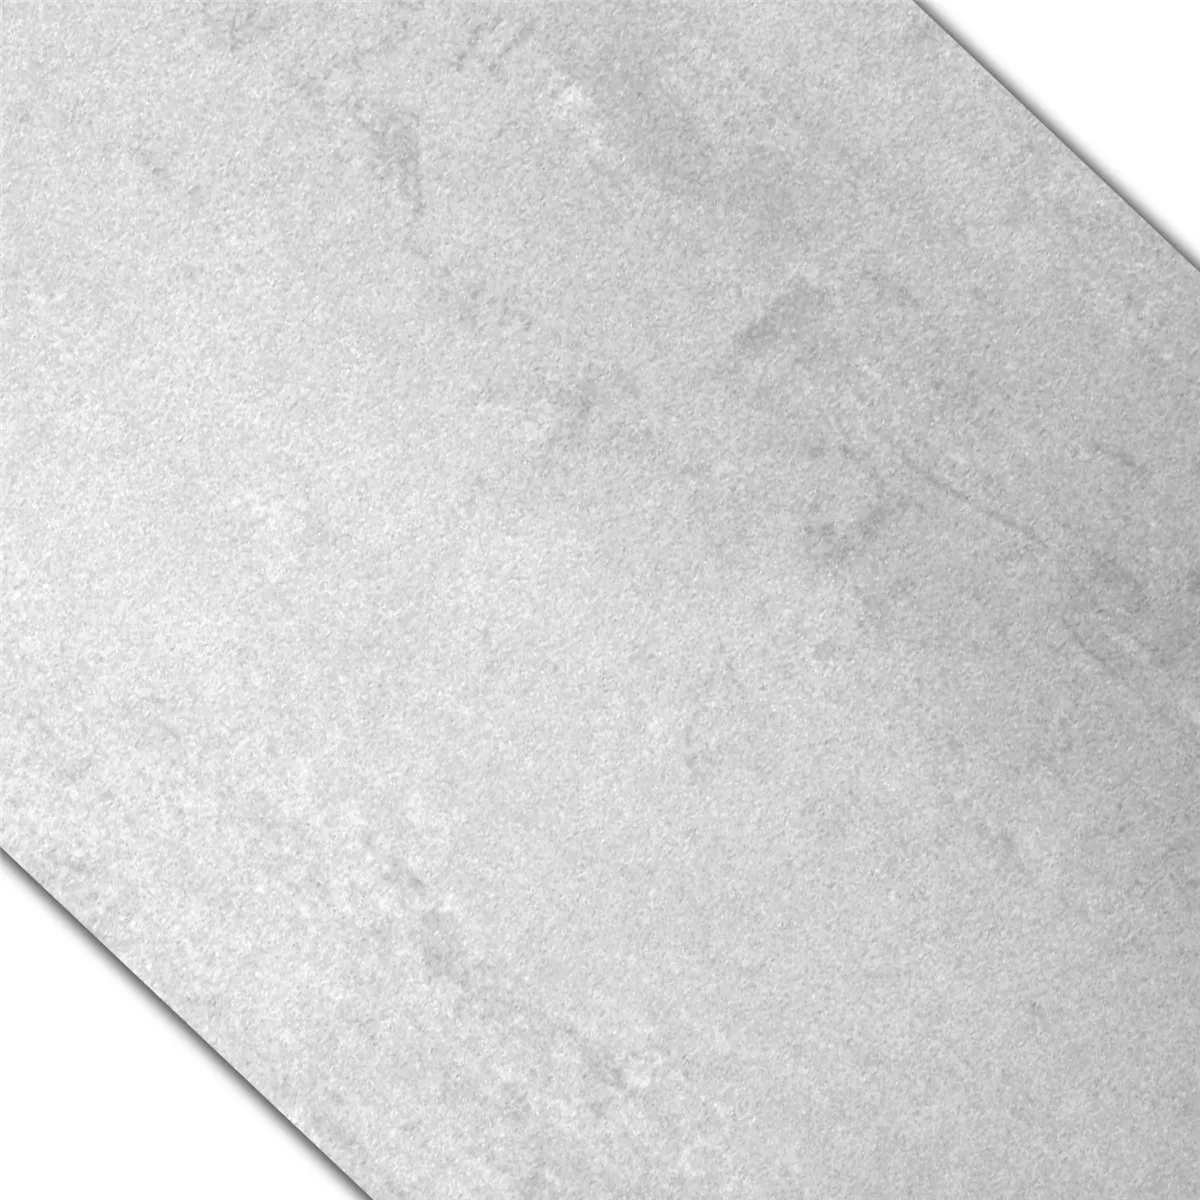 Muster Bodenfliesen Madeira Anpoliert Weiss 30x60cm